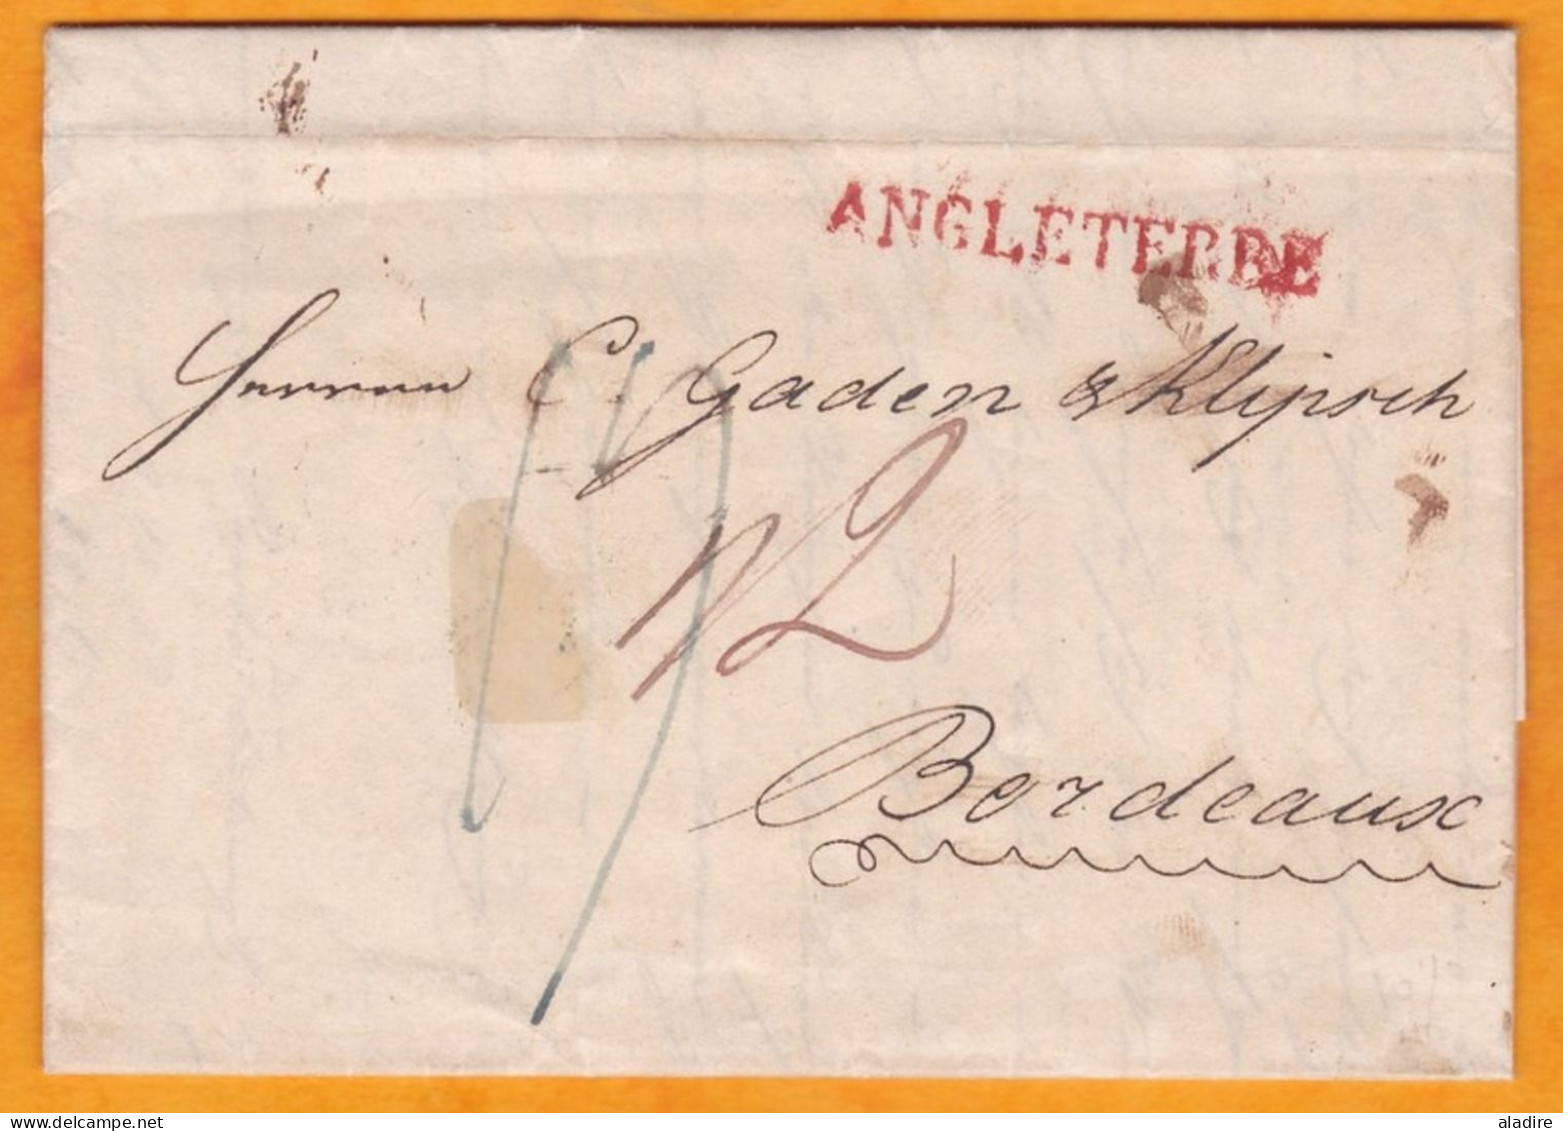 1827 - KGIV - Lettre De Londres, GB Vers Bordeaux, France - Griffe ANGLETERRE En Rouge - Cover From London To Bordeaux - ...-1840 Prephilately